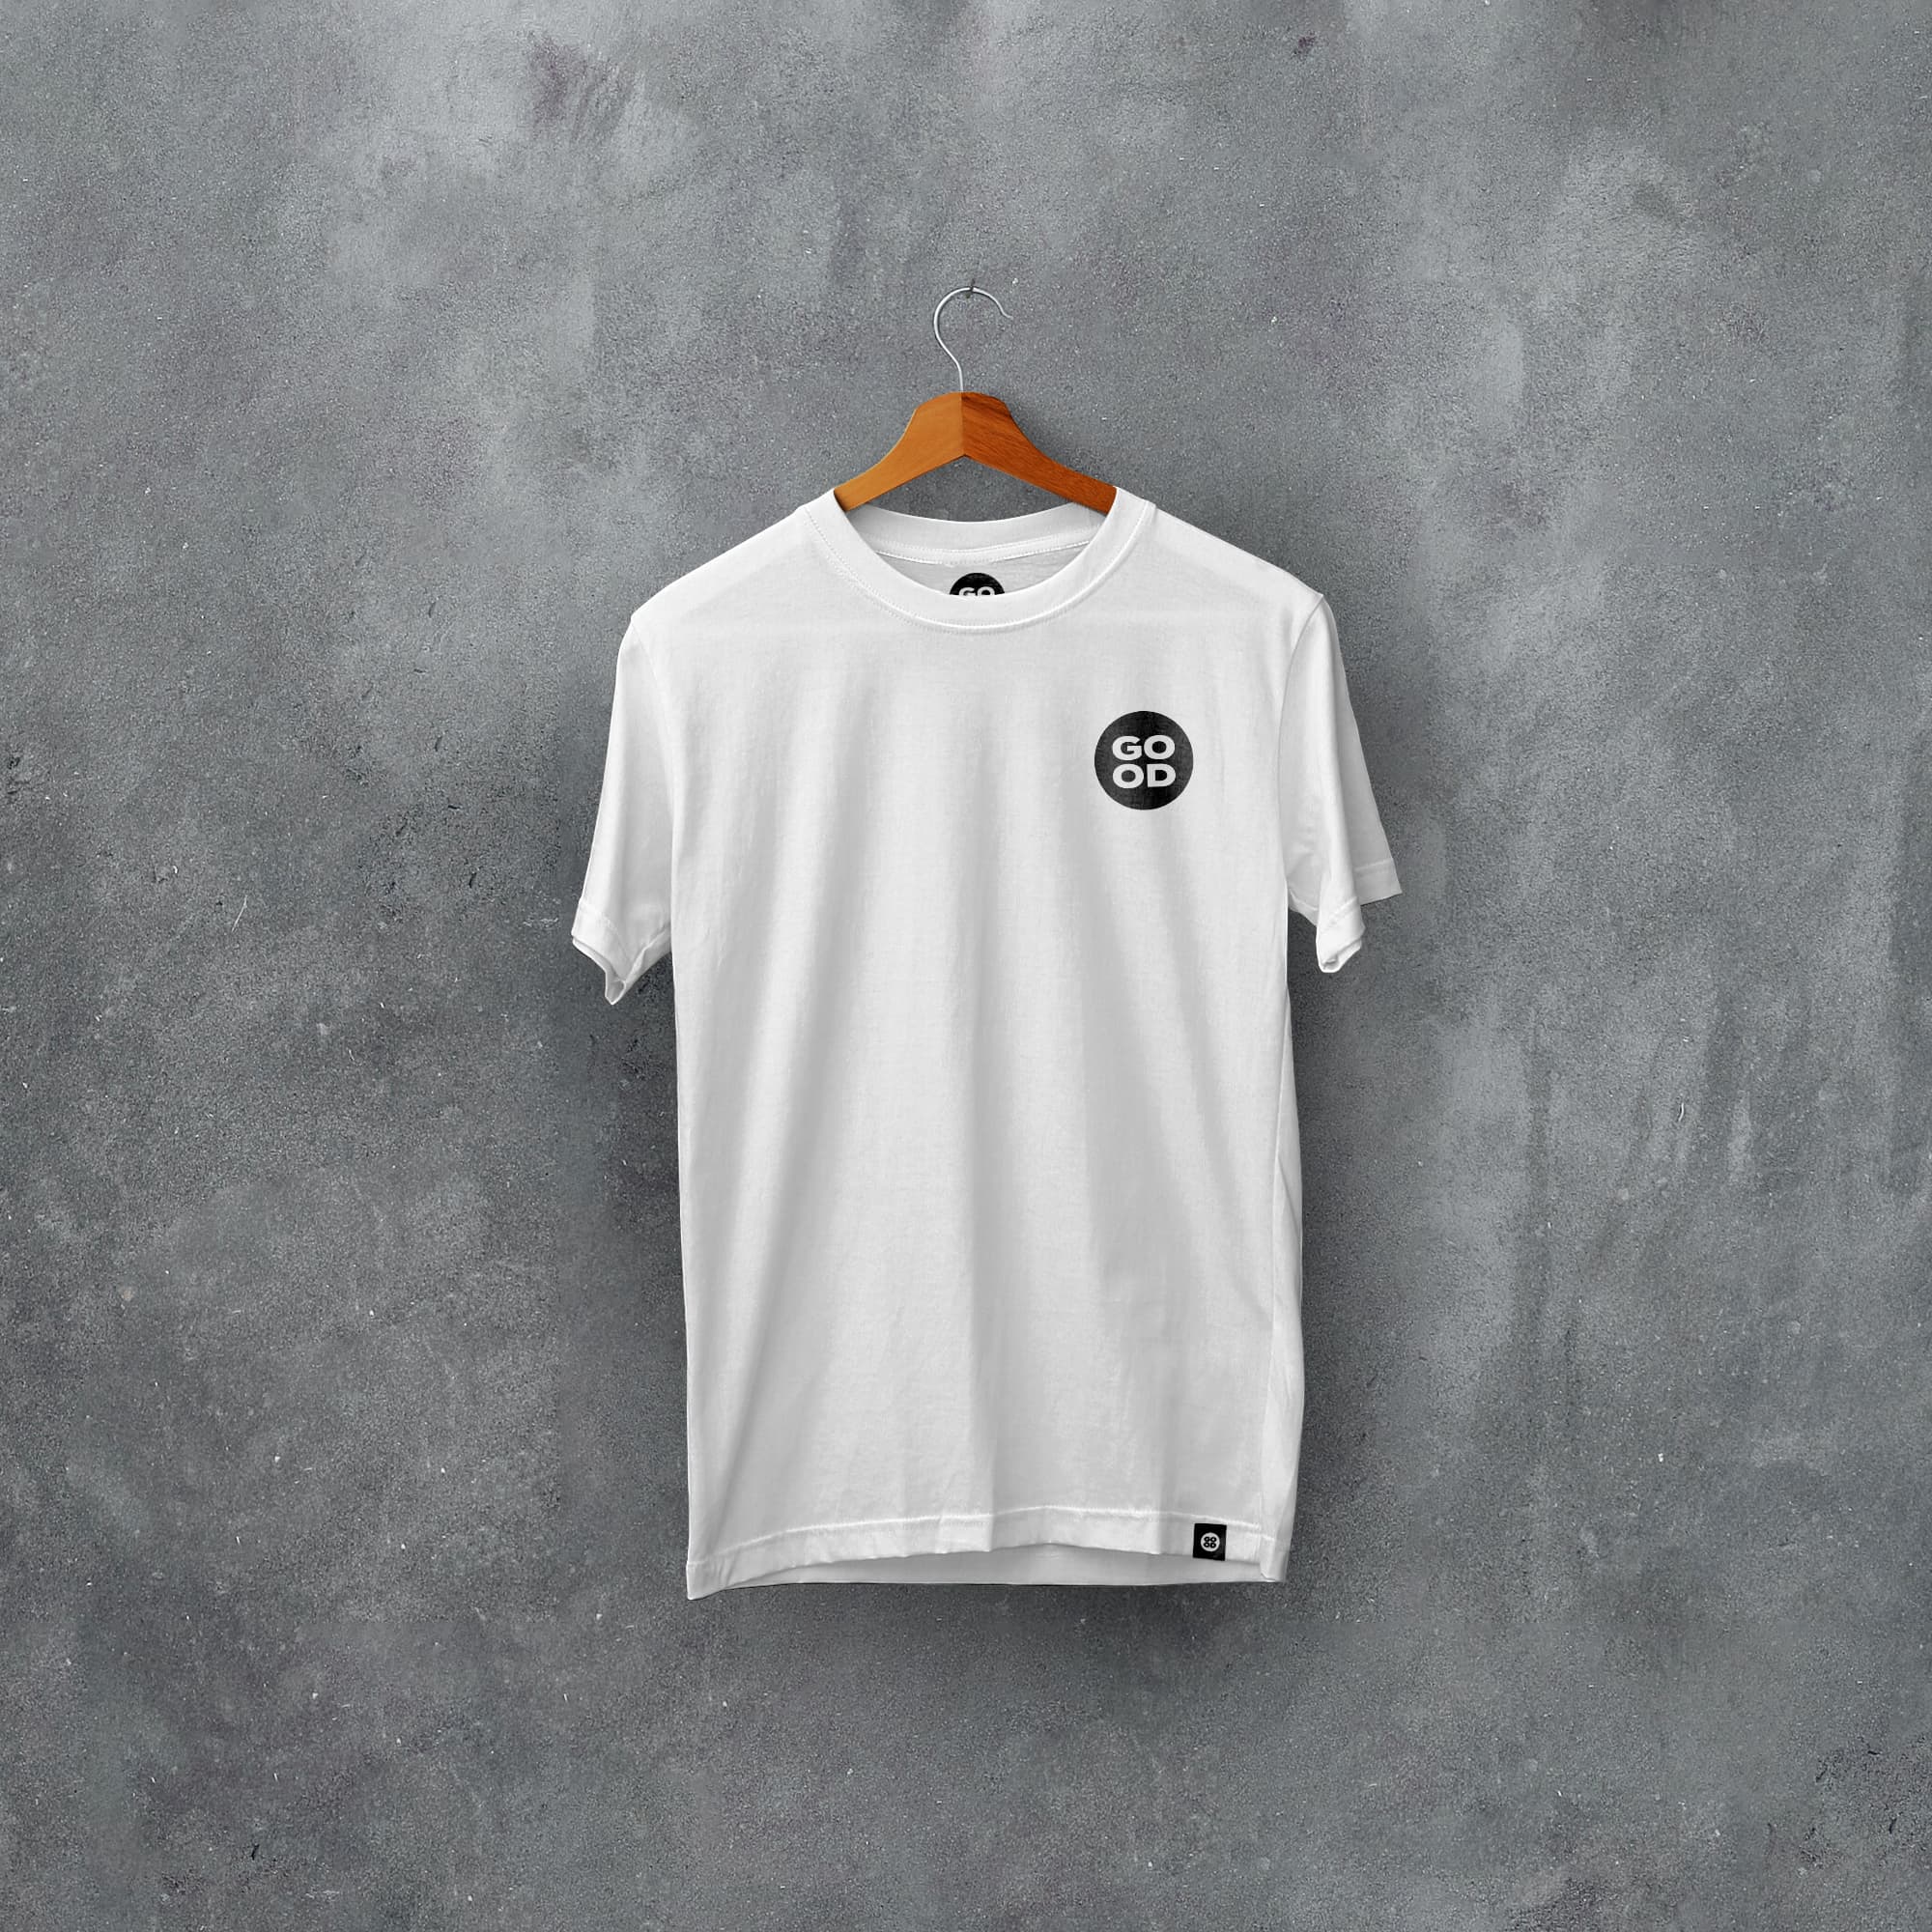 Salford Classic Kits Football T-Shirt